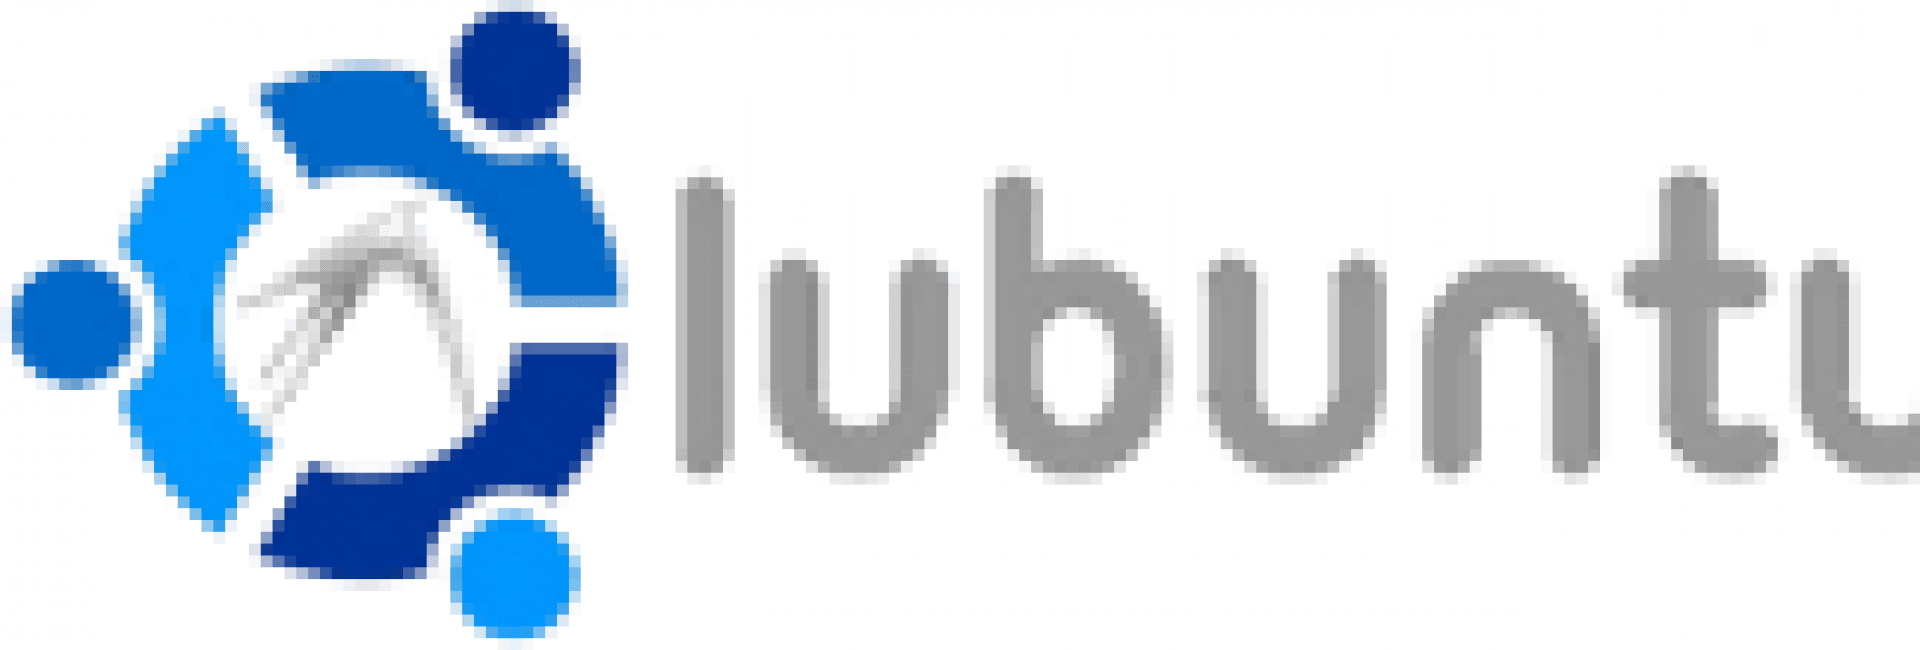 Lubuntu Logo - Cropped Udtheme_logo 6.png